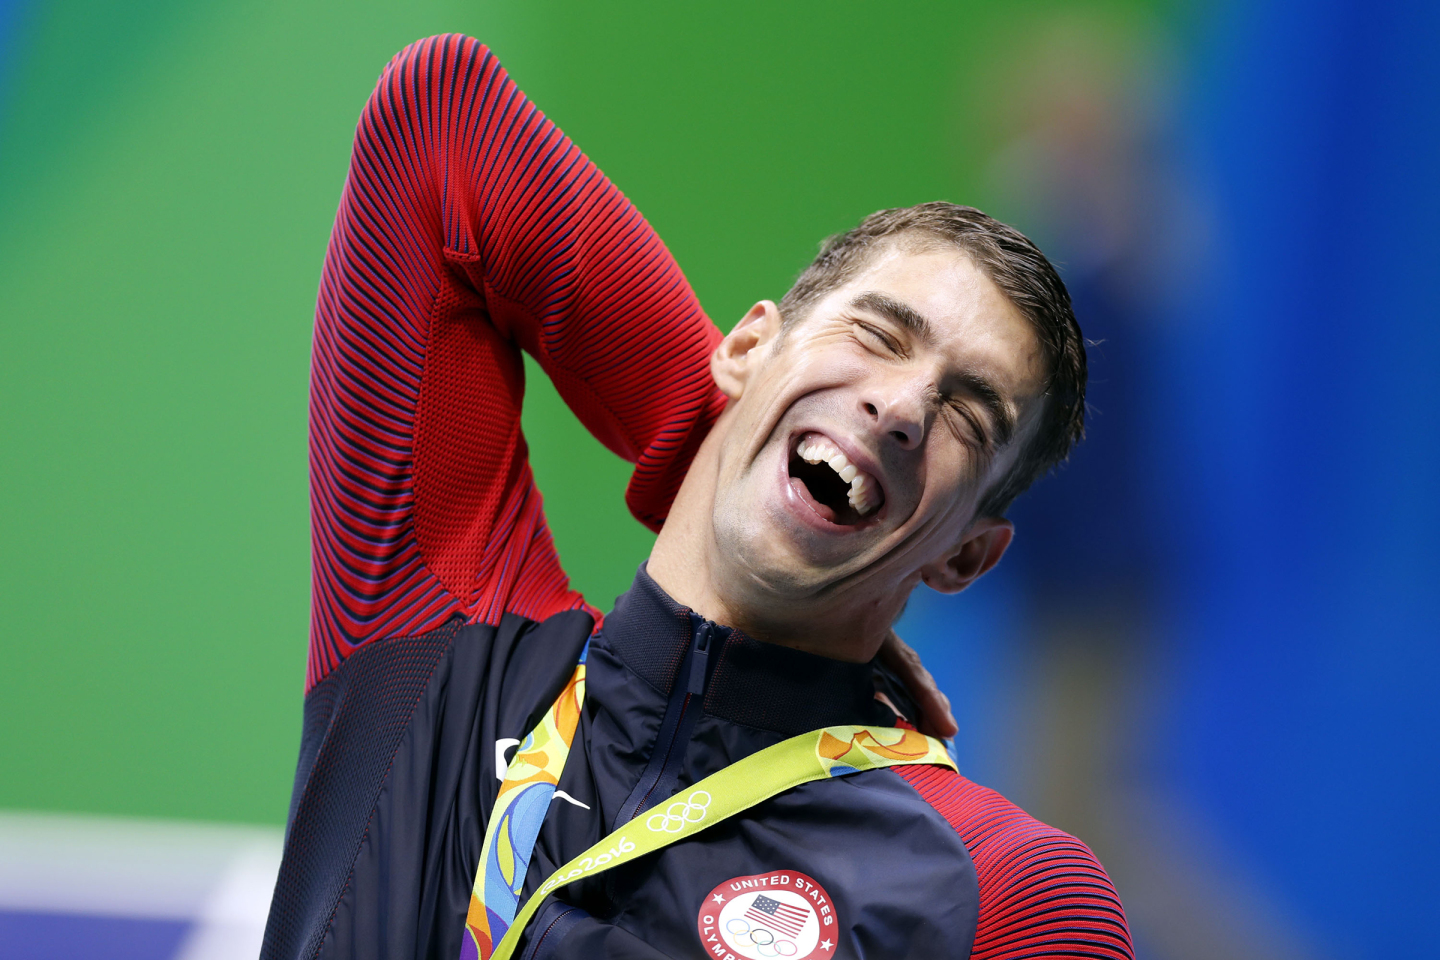 9 août 2016, lors des JO à Rio. Le nageur américain Michael Phelps assiste à la cérémonie de remise des prix du 200 mètres 4 nages individuel masculin. Il a remporté la médaille d'or avec un temps de 7 minutes et 0,66 secondes. © CHINA OUT 